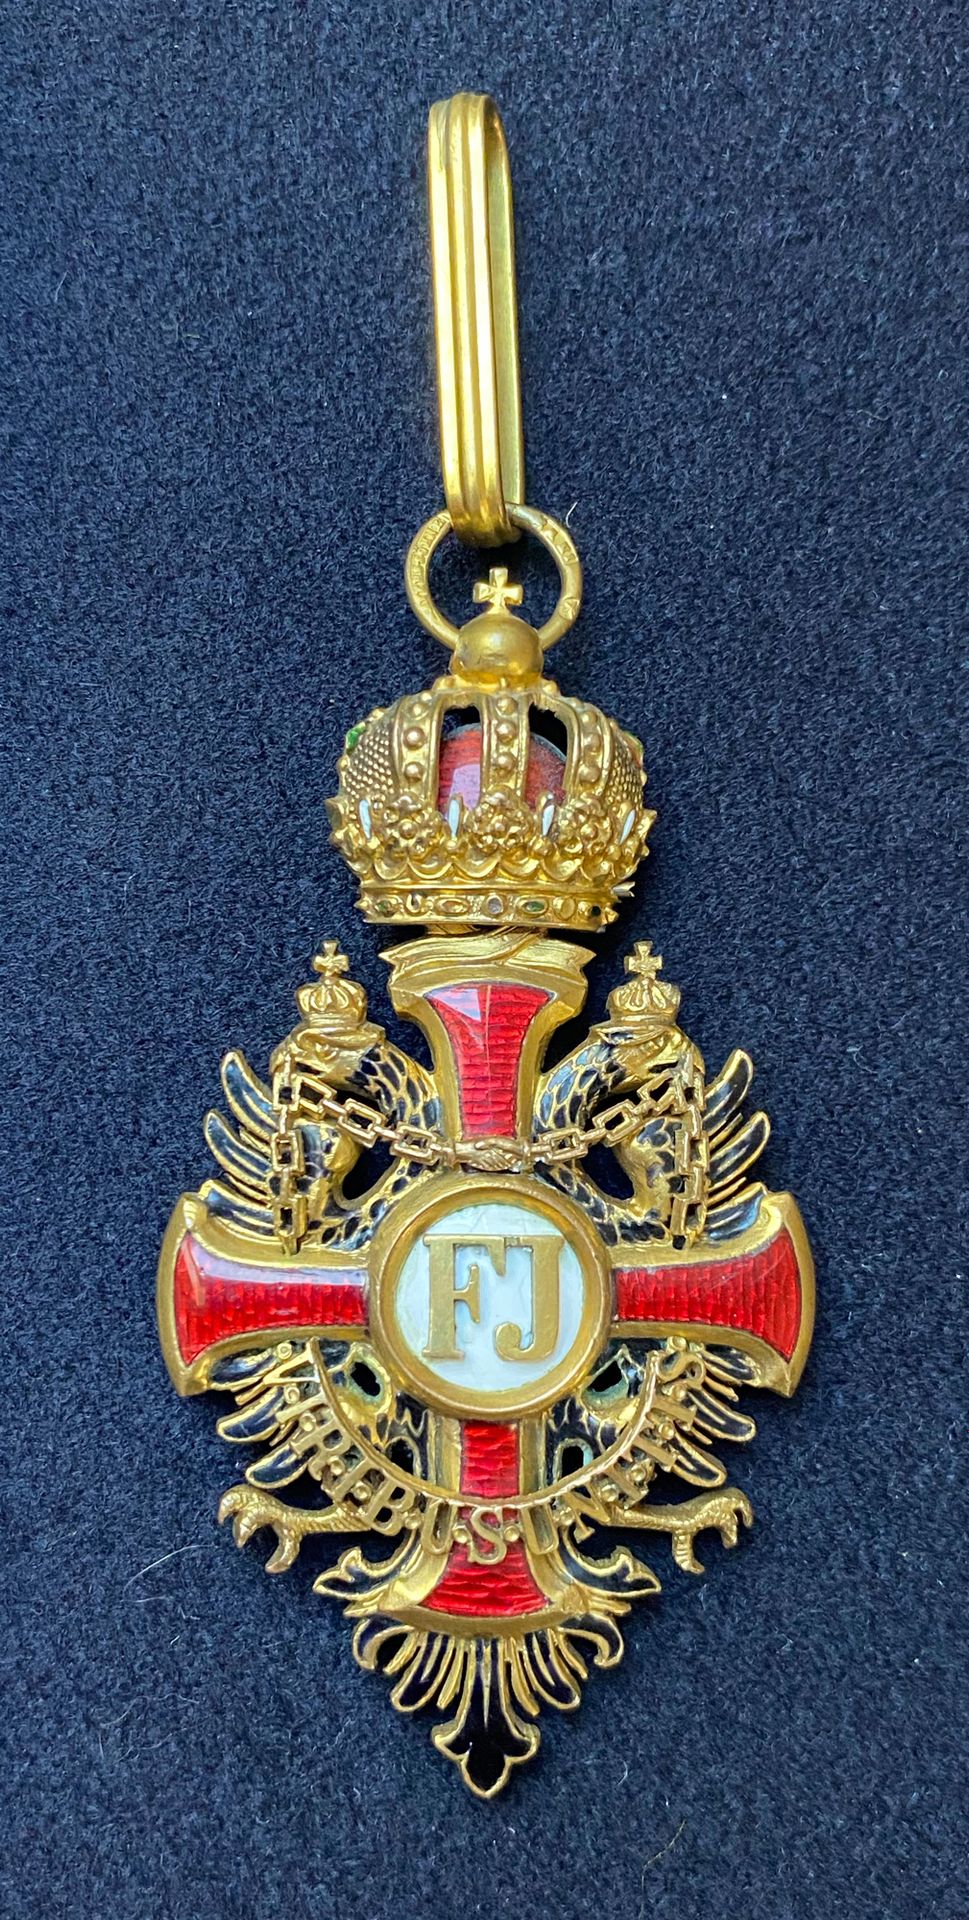 Null Austria - Orden de Francisco José, fundada en 1849, joya de Comandante, bro&hellip;